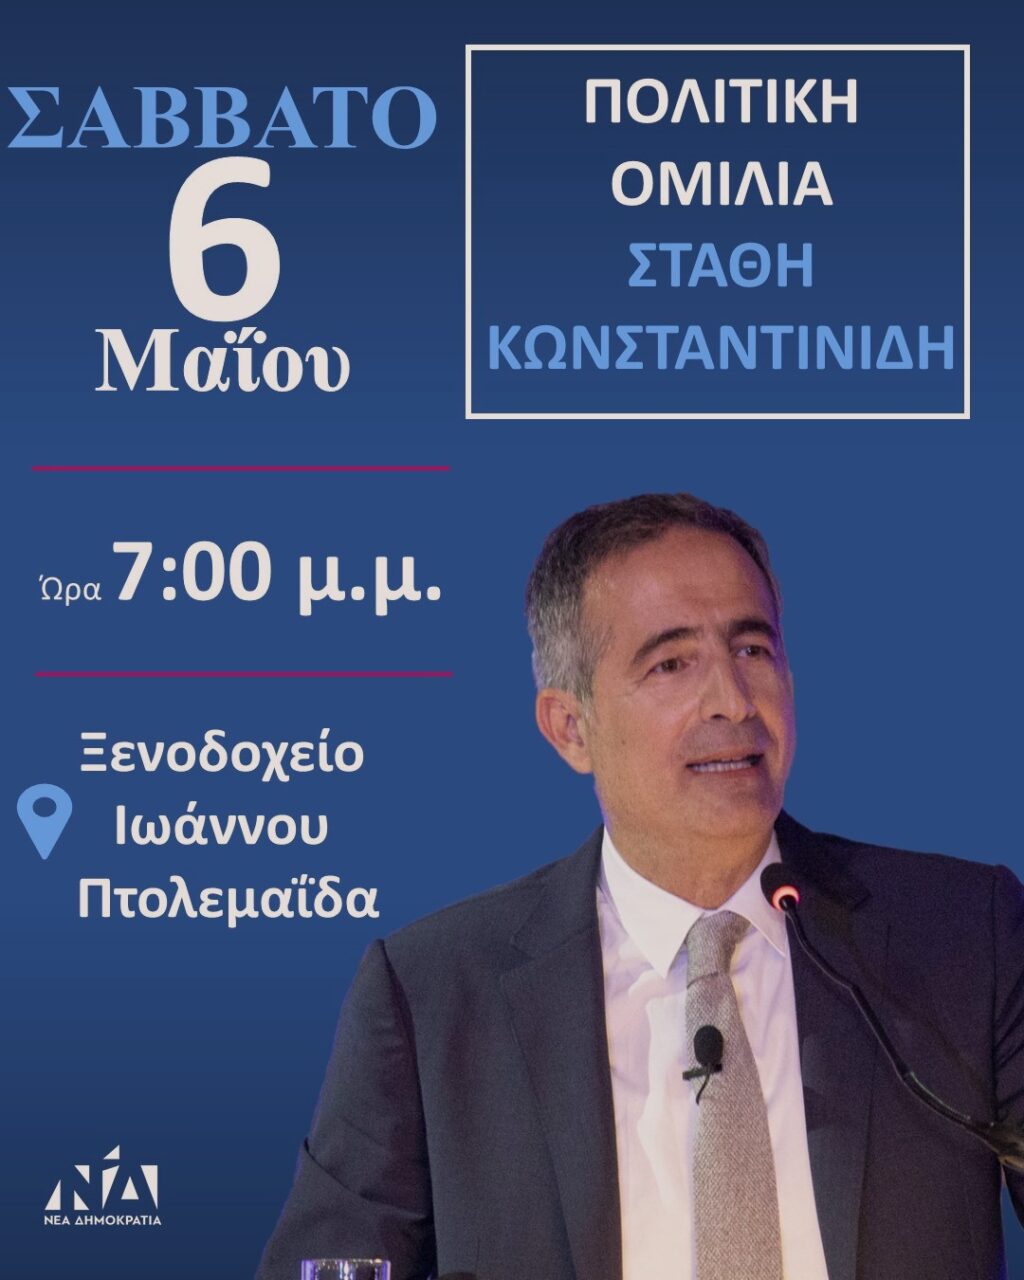 Πολιτική εκδήλωση του Βουλευτή Ν. Κοζάνης Στάθη Κωνσταντινίδη